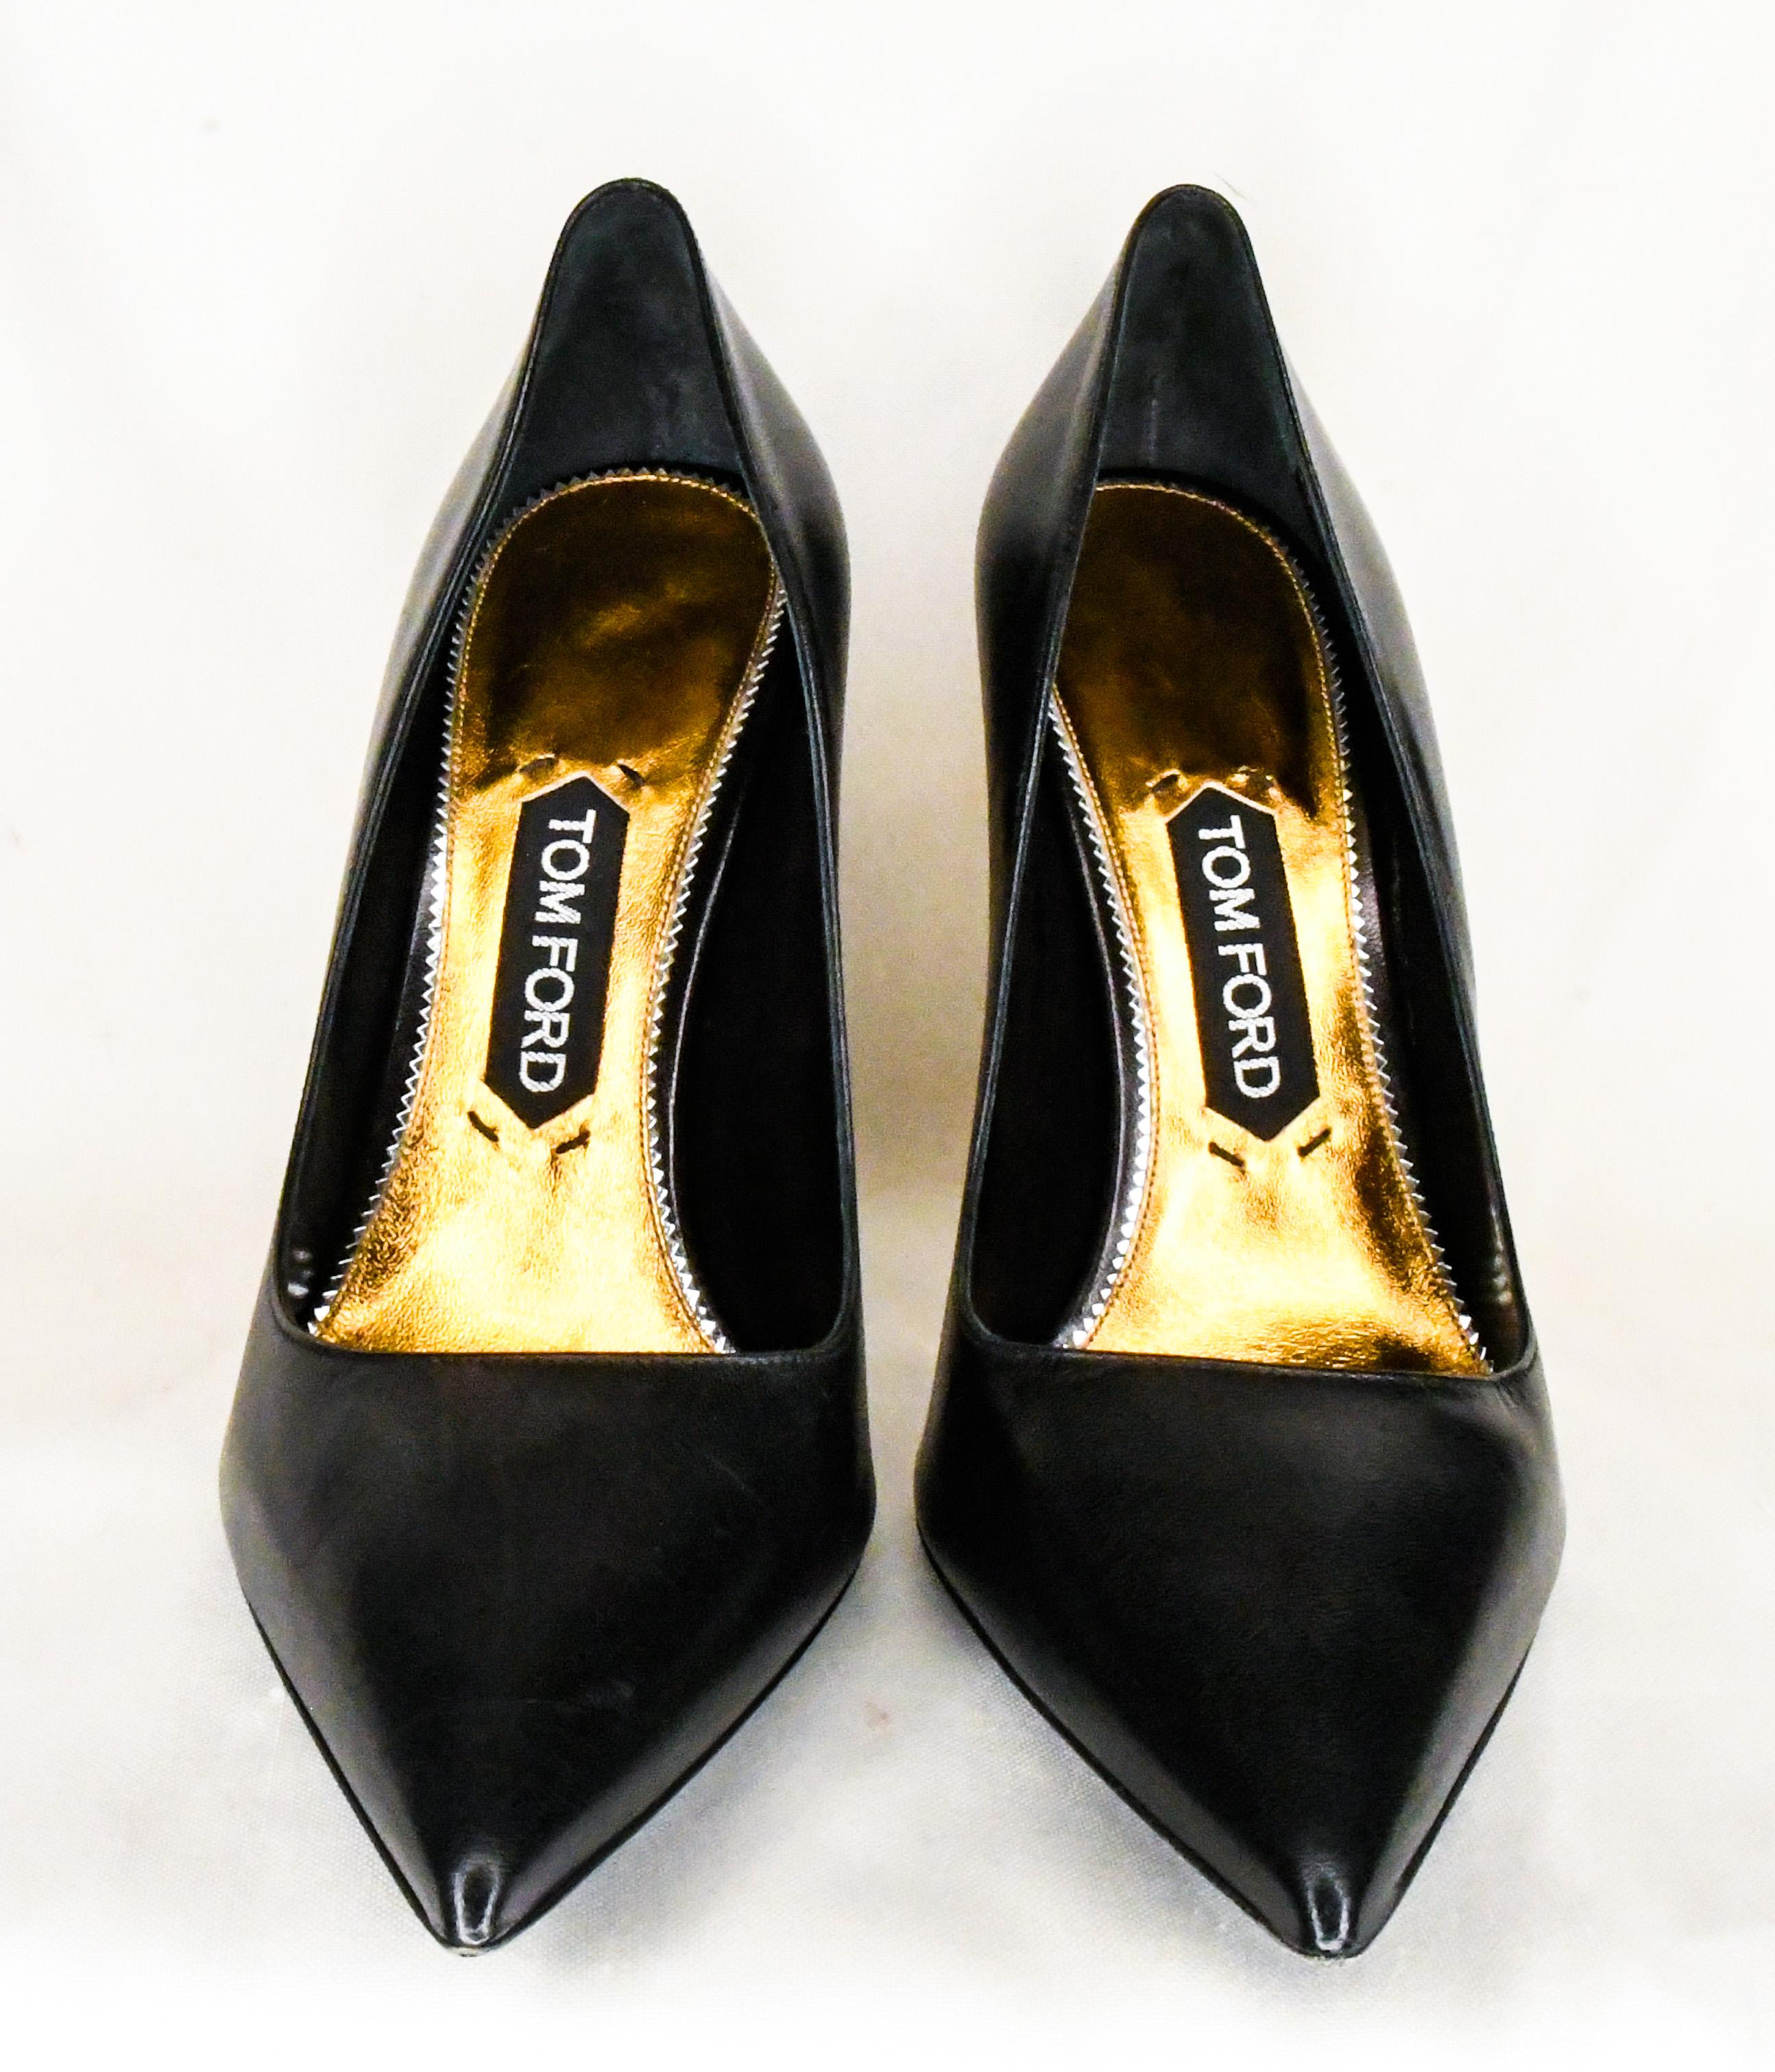 black pump with gold heel